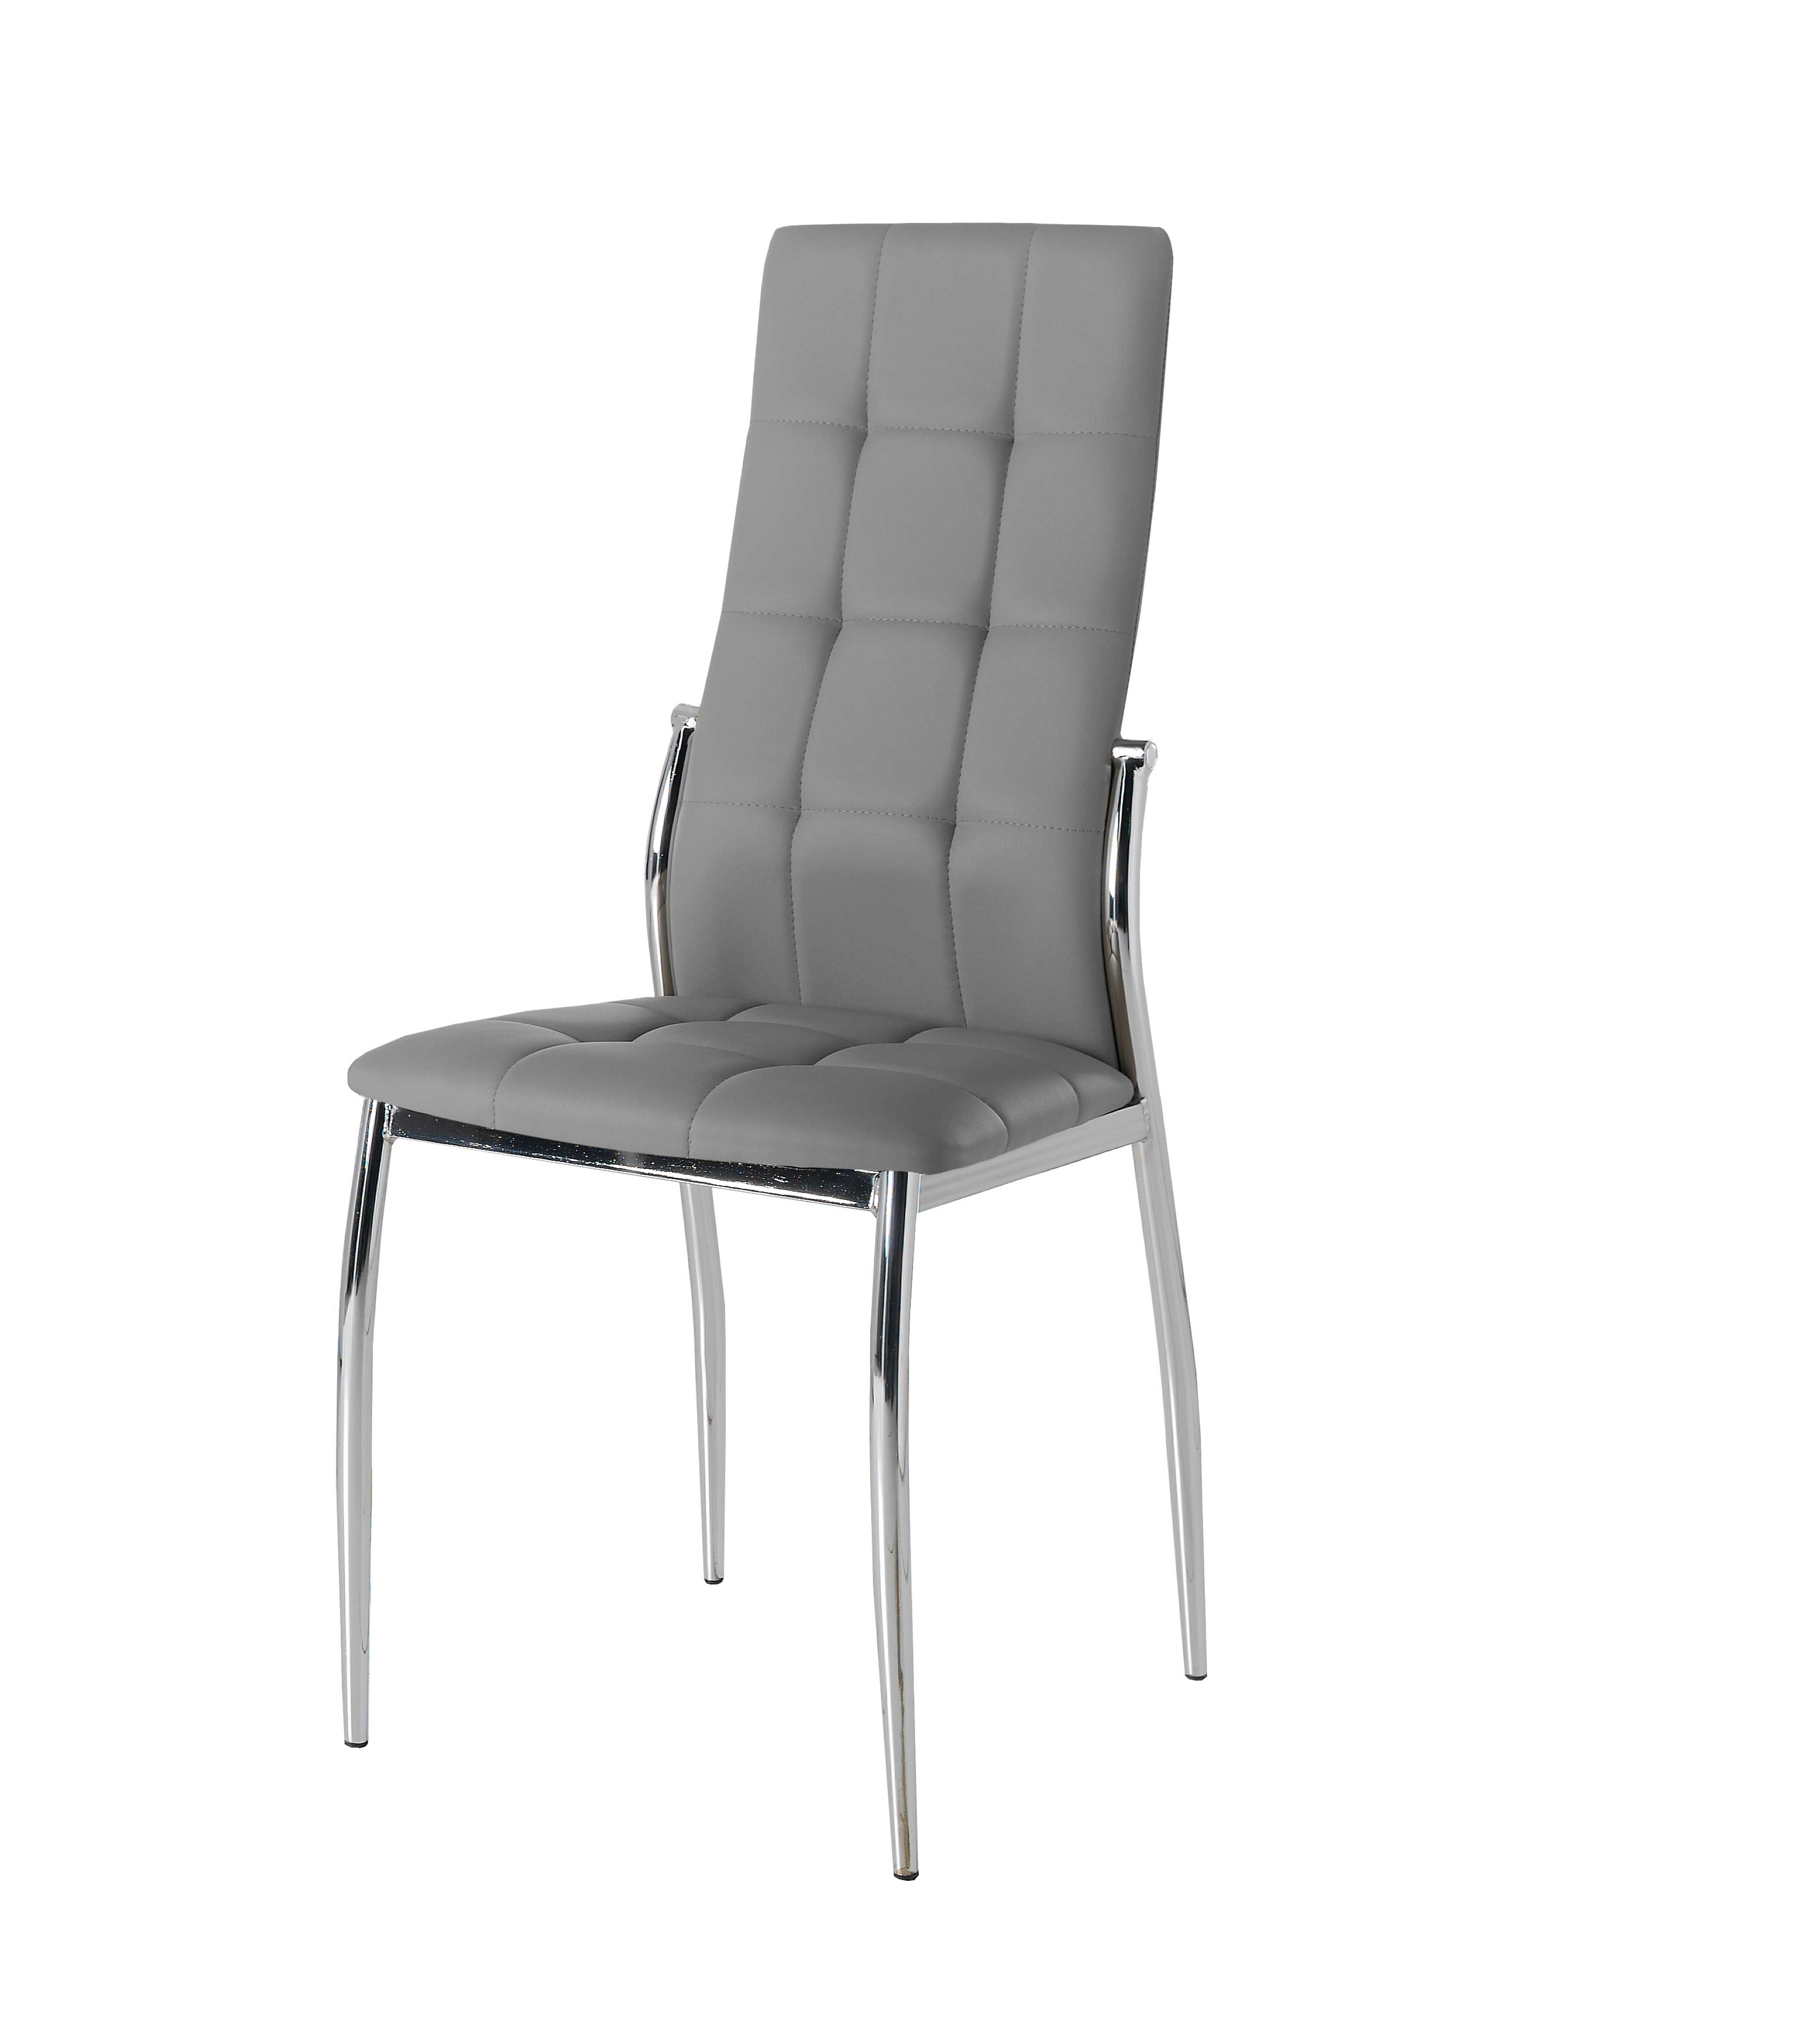 Pack 4 sillas polipiel color gris mod. Cami